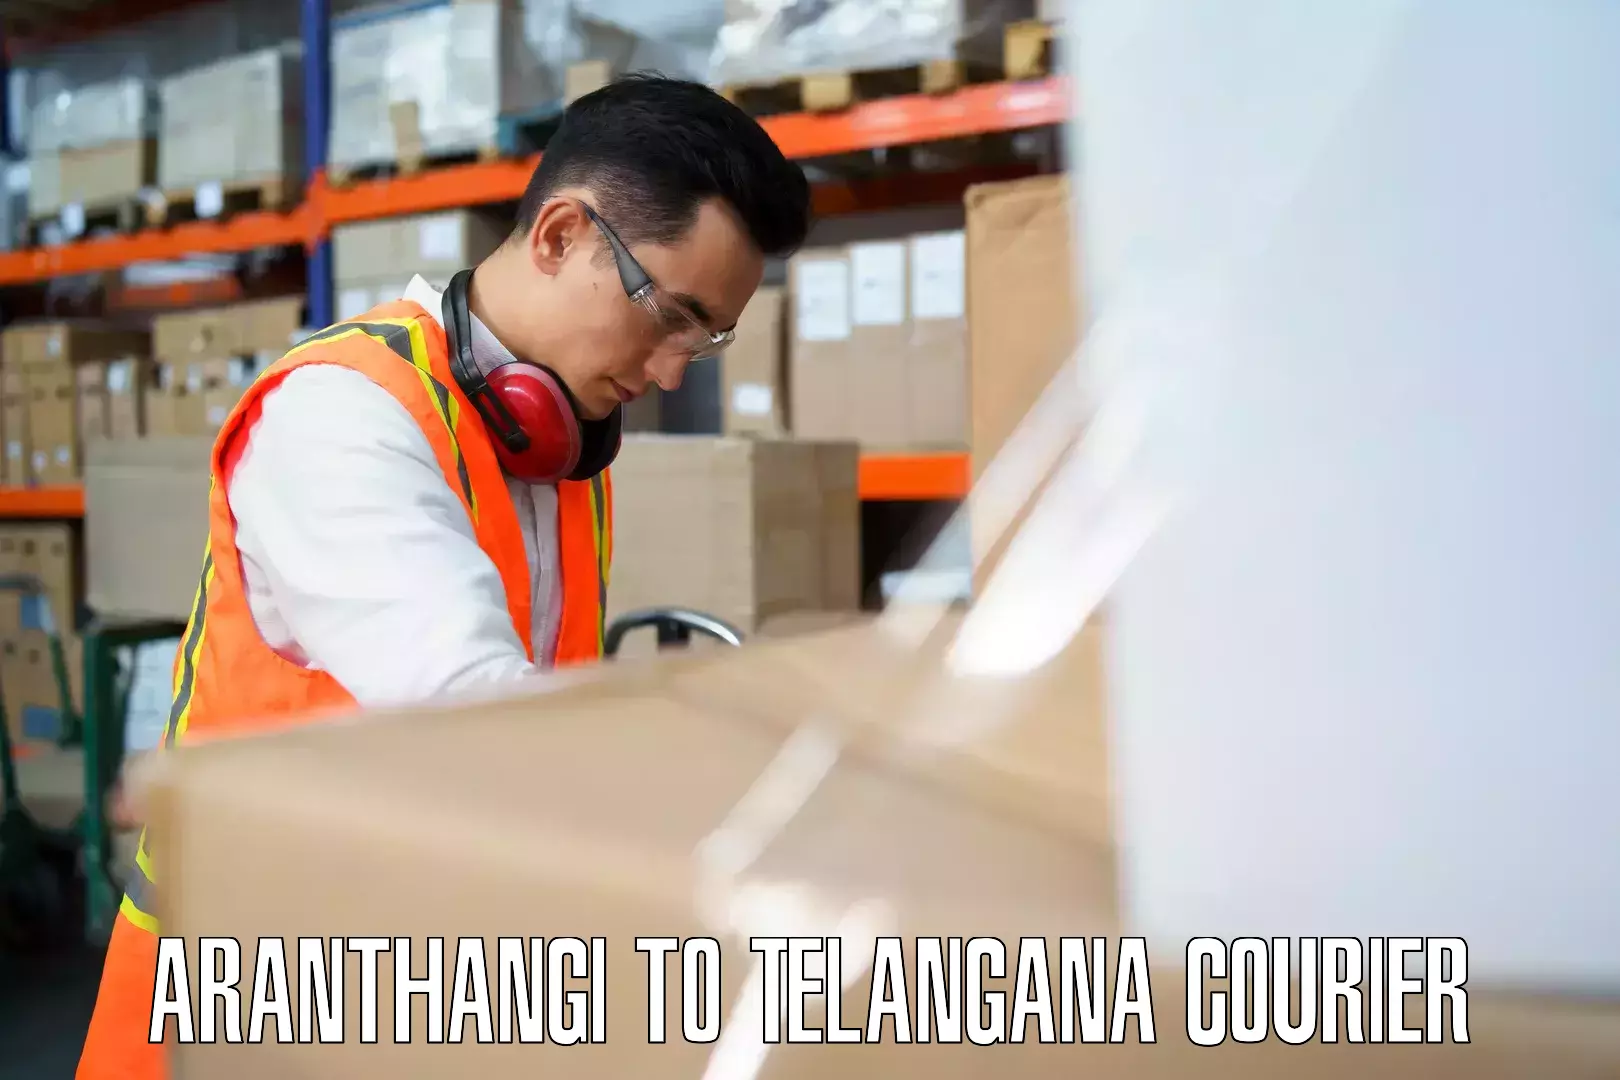 Baggage transport updates Aranthangi to Telangana